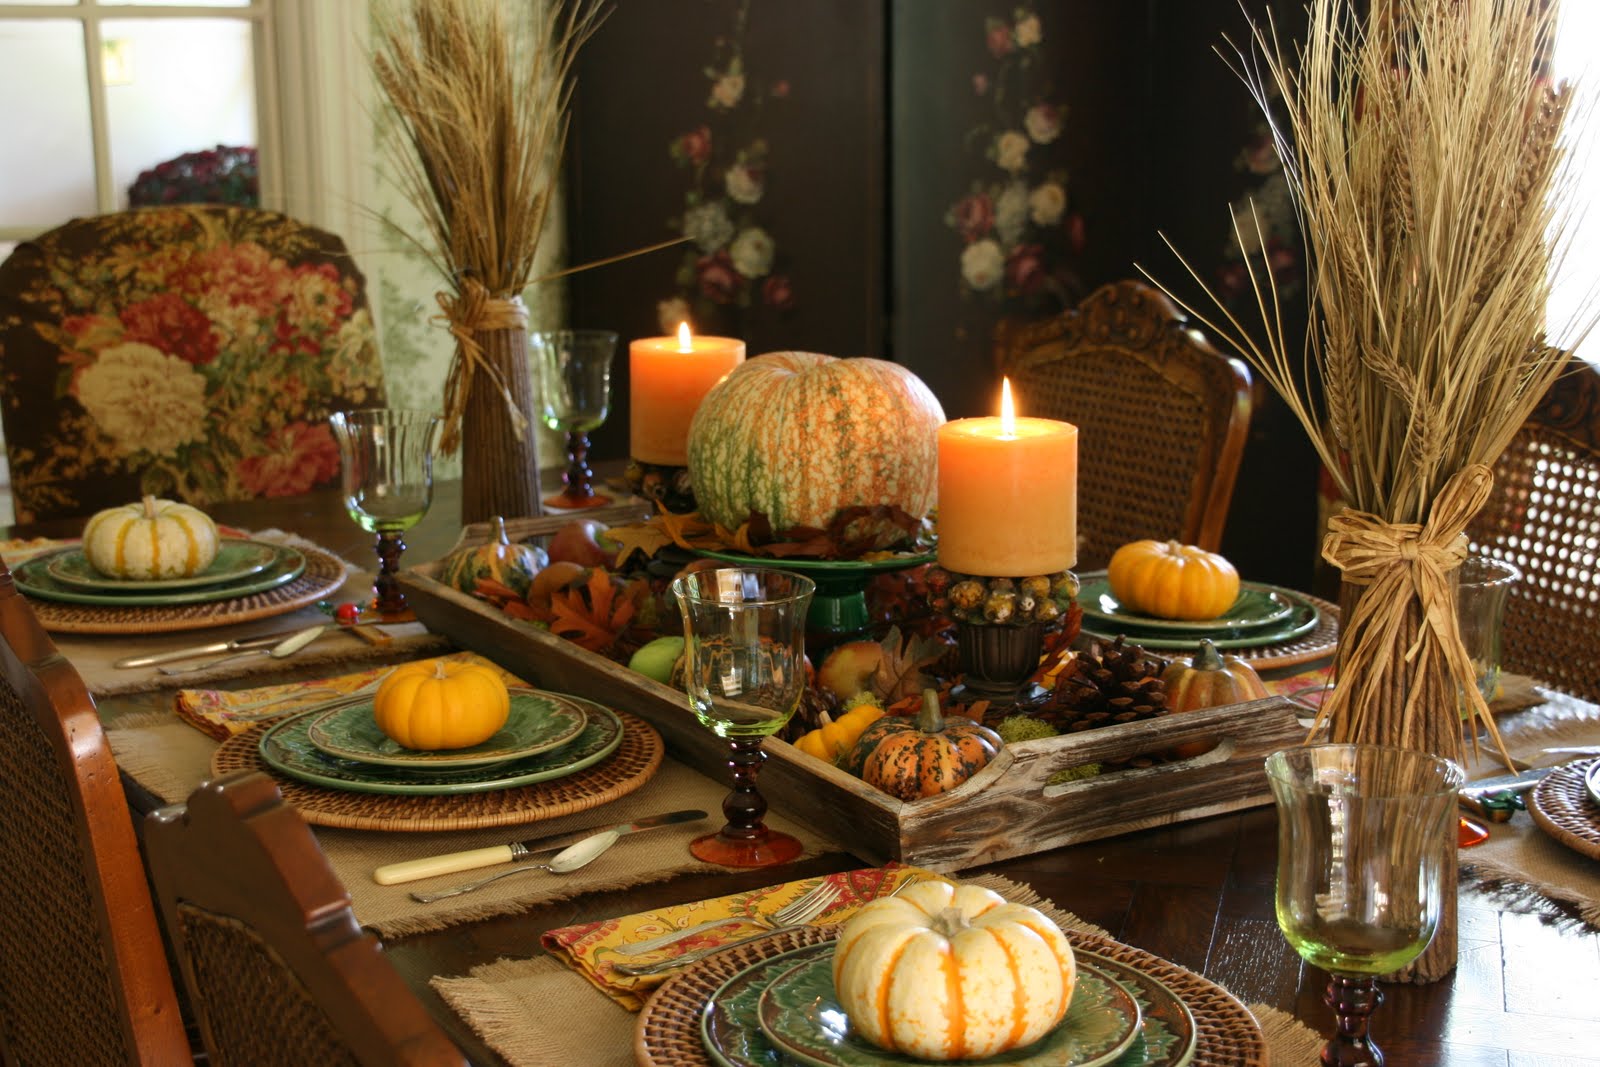 vignette design: An Autumn Tablescape